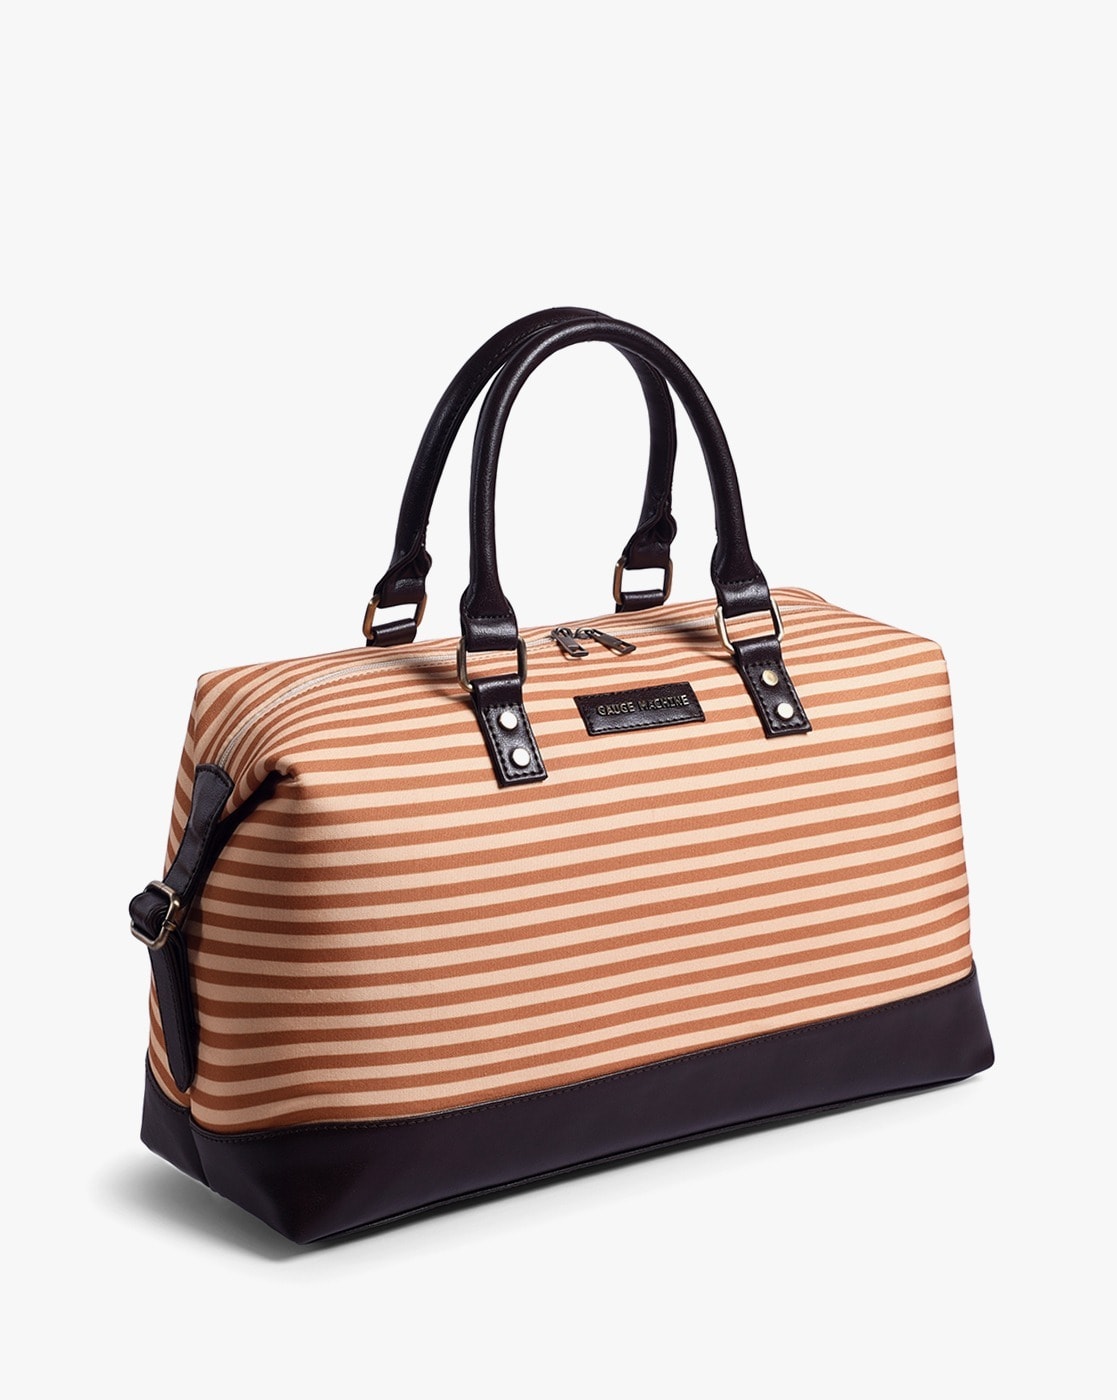 Buy Gauge Machine Brown Carrycase Messenger Bag at Amazon.in